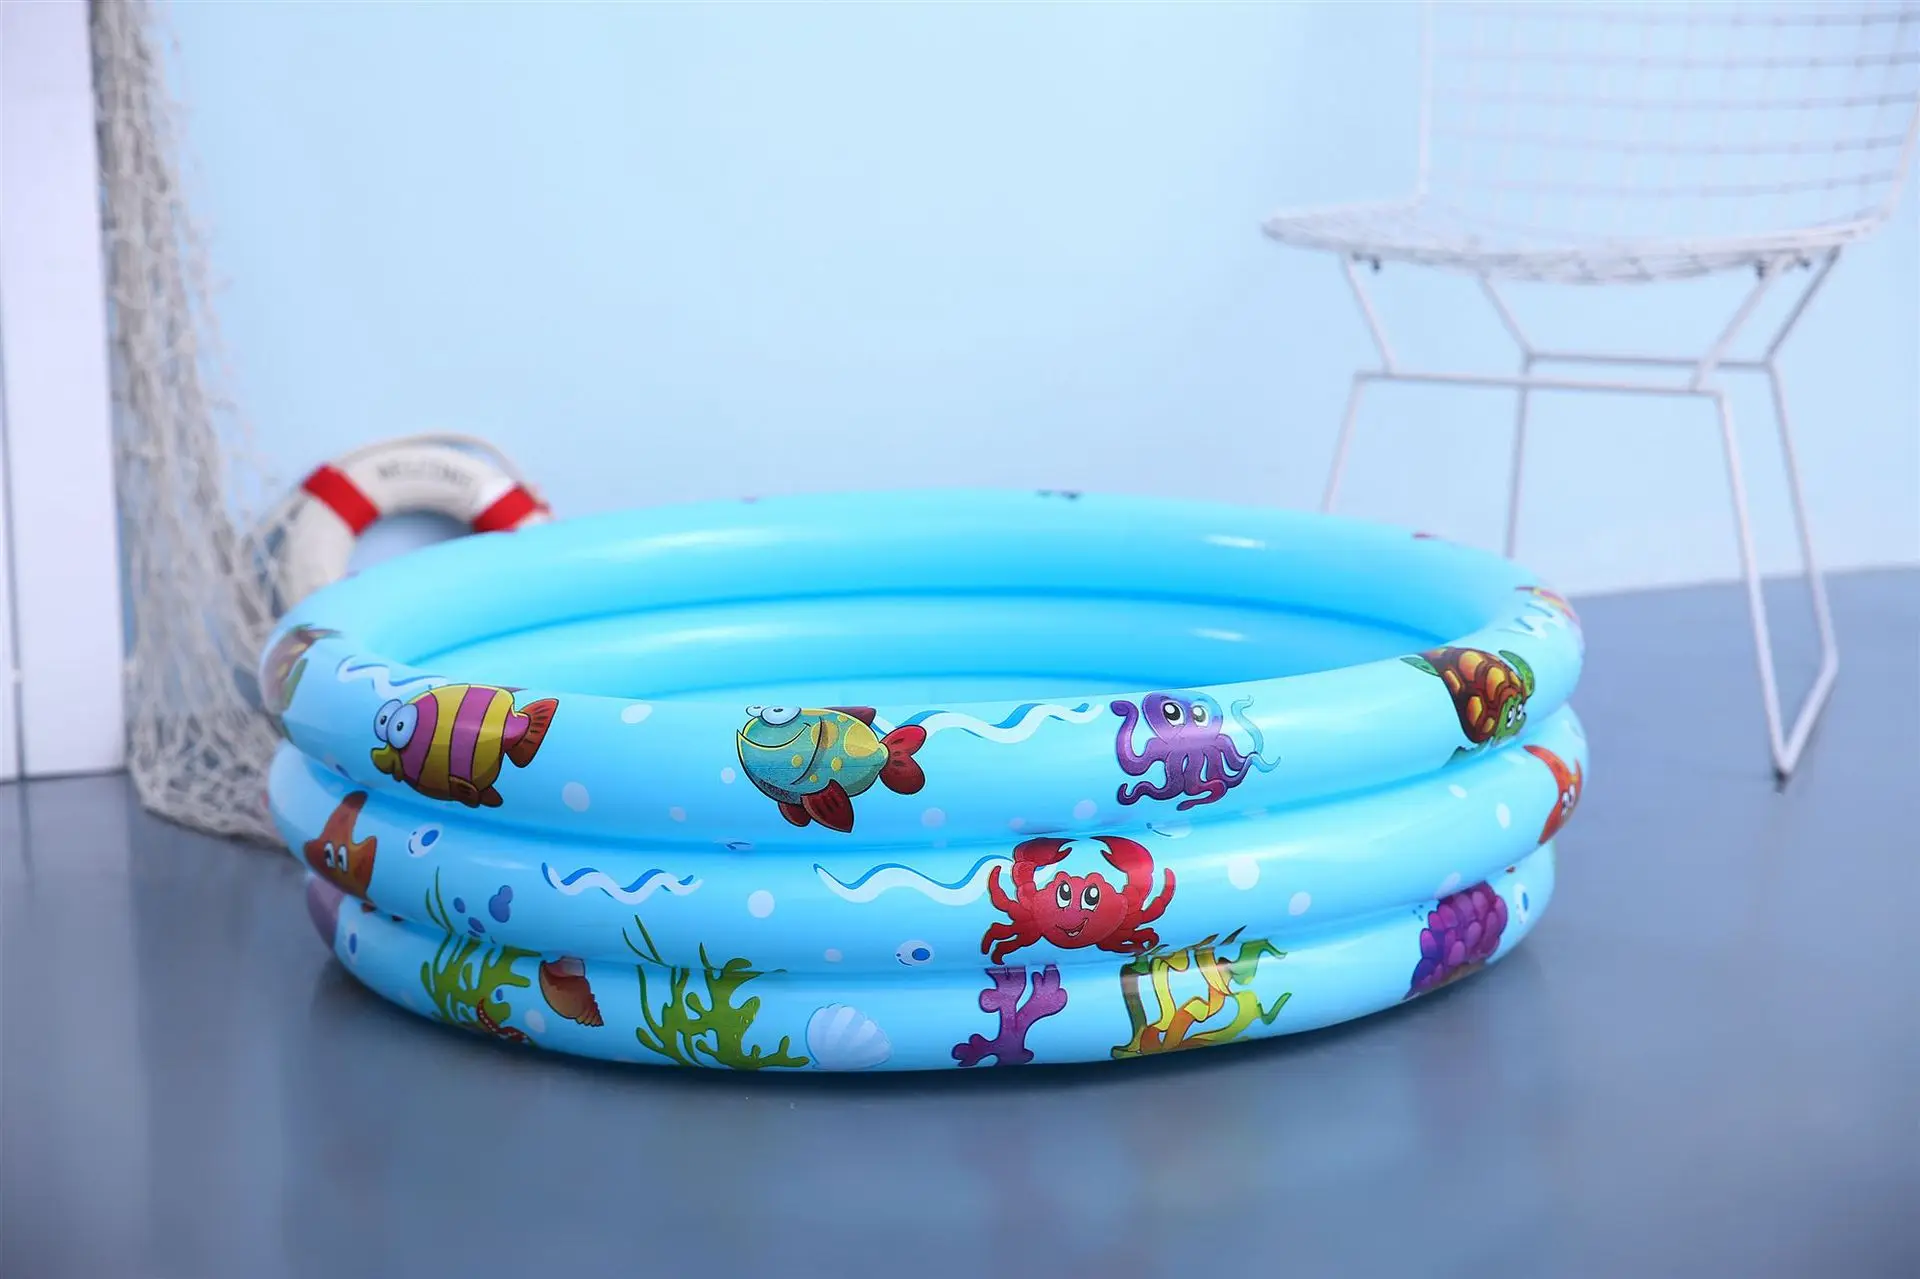 Надувной круг для купания ребенка бассейн портативный открытый бассейн детский бассейн Ванна детский бассейн детский поплавок бассейн